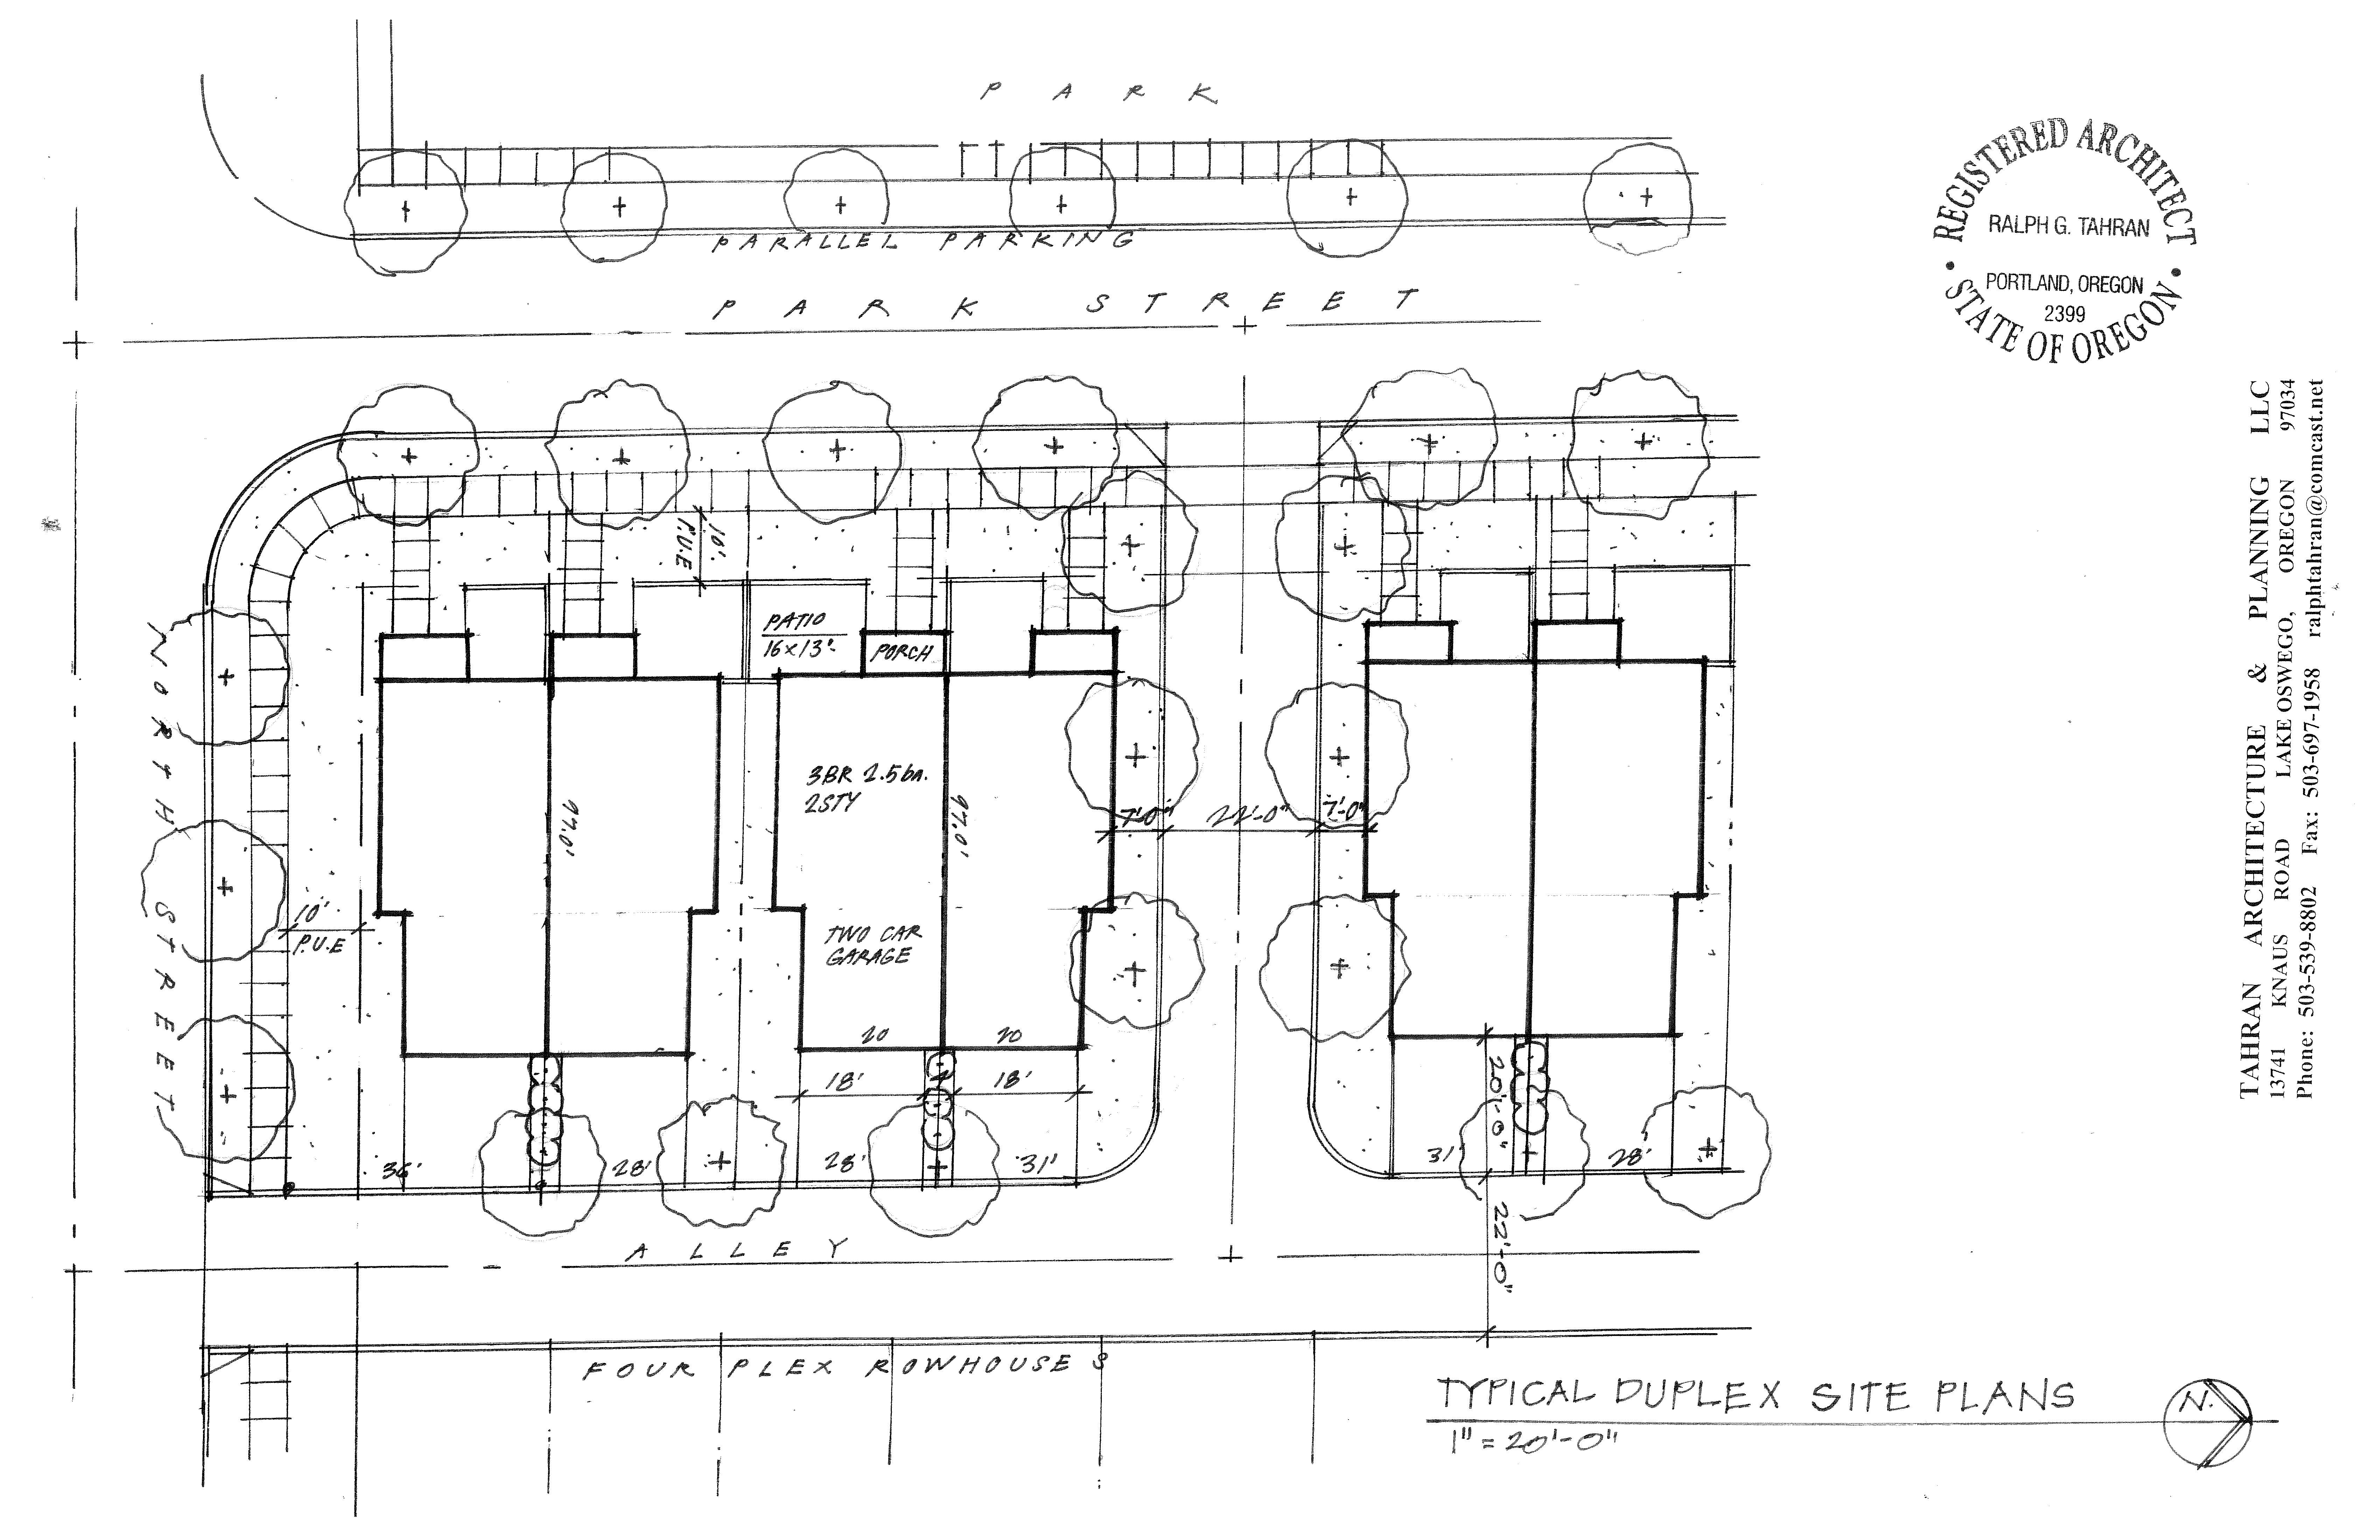 Typical Duplex Site Plan